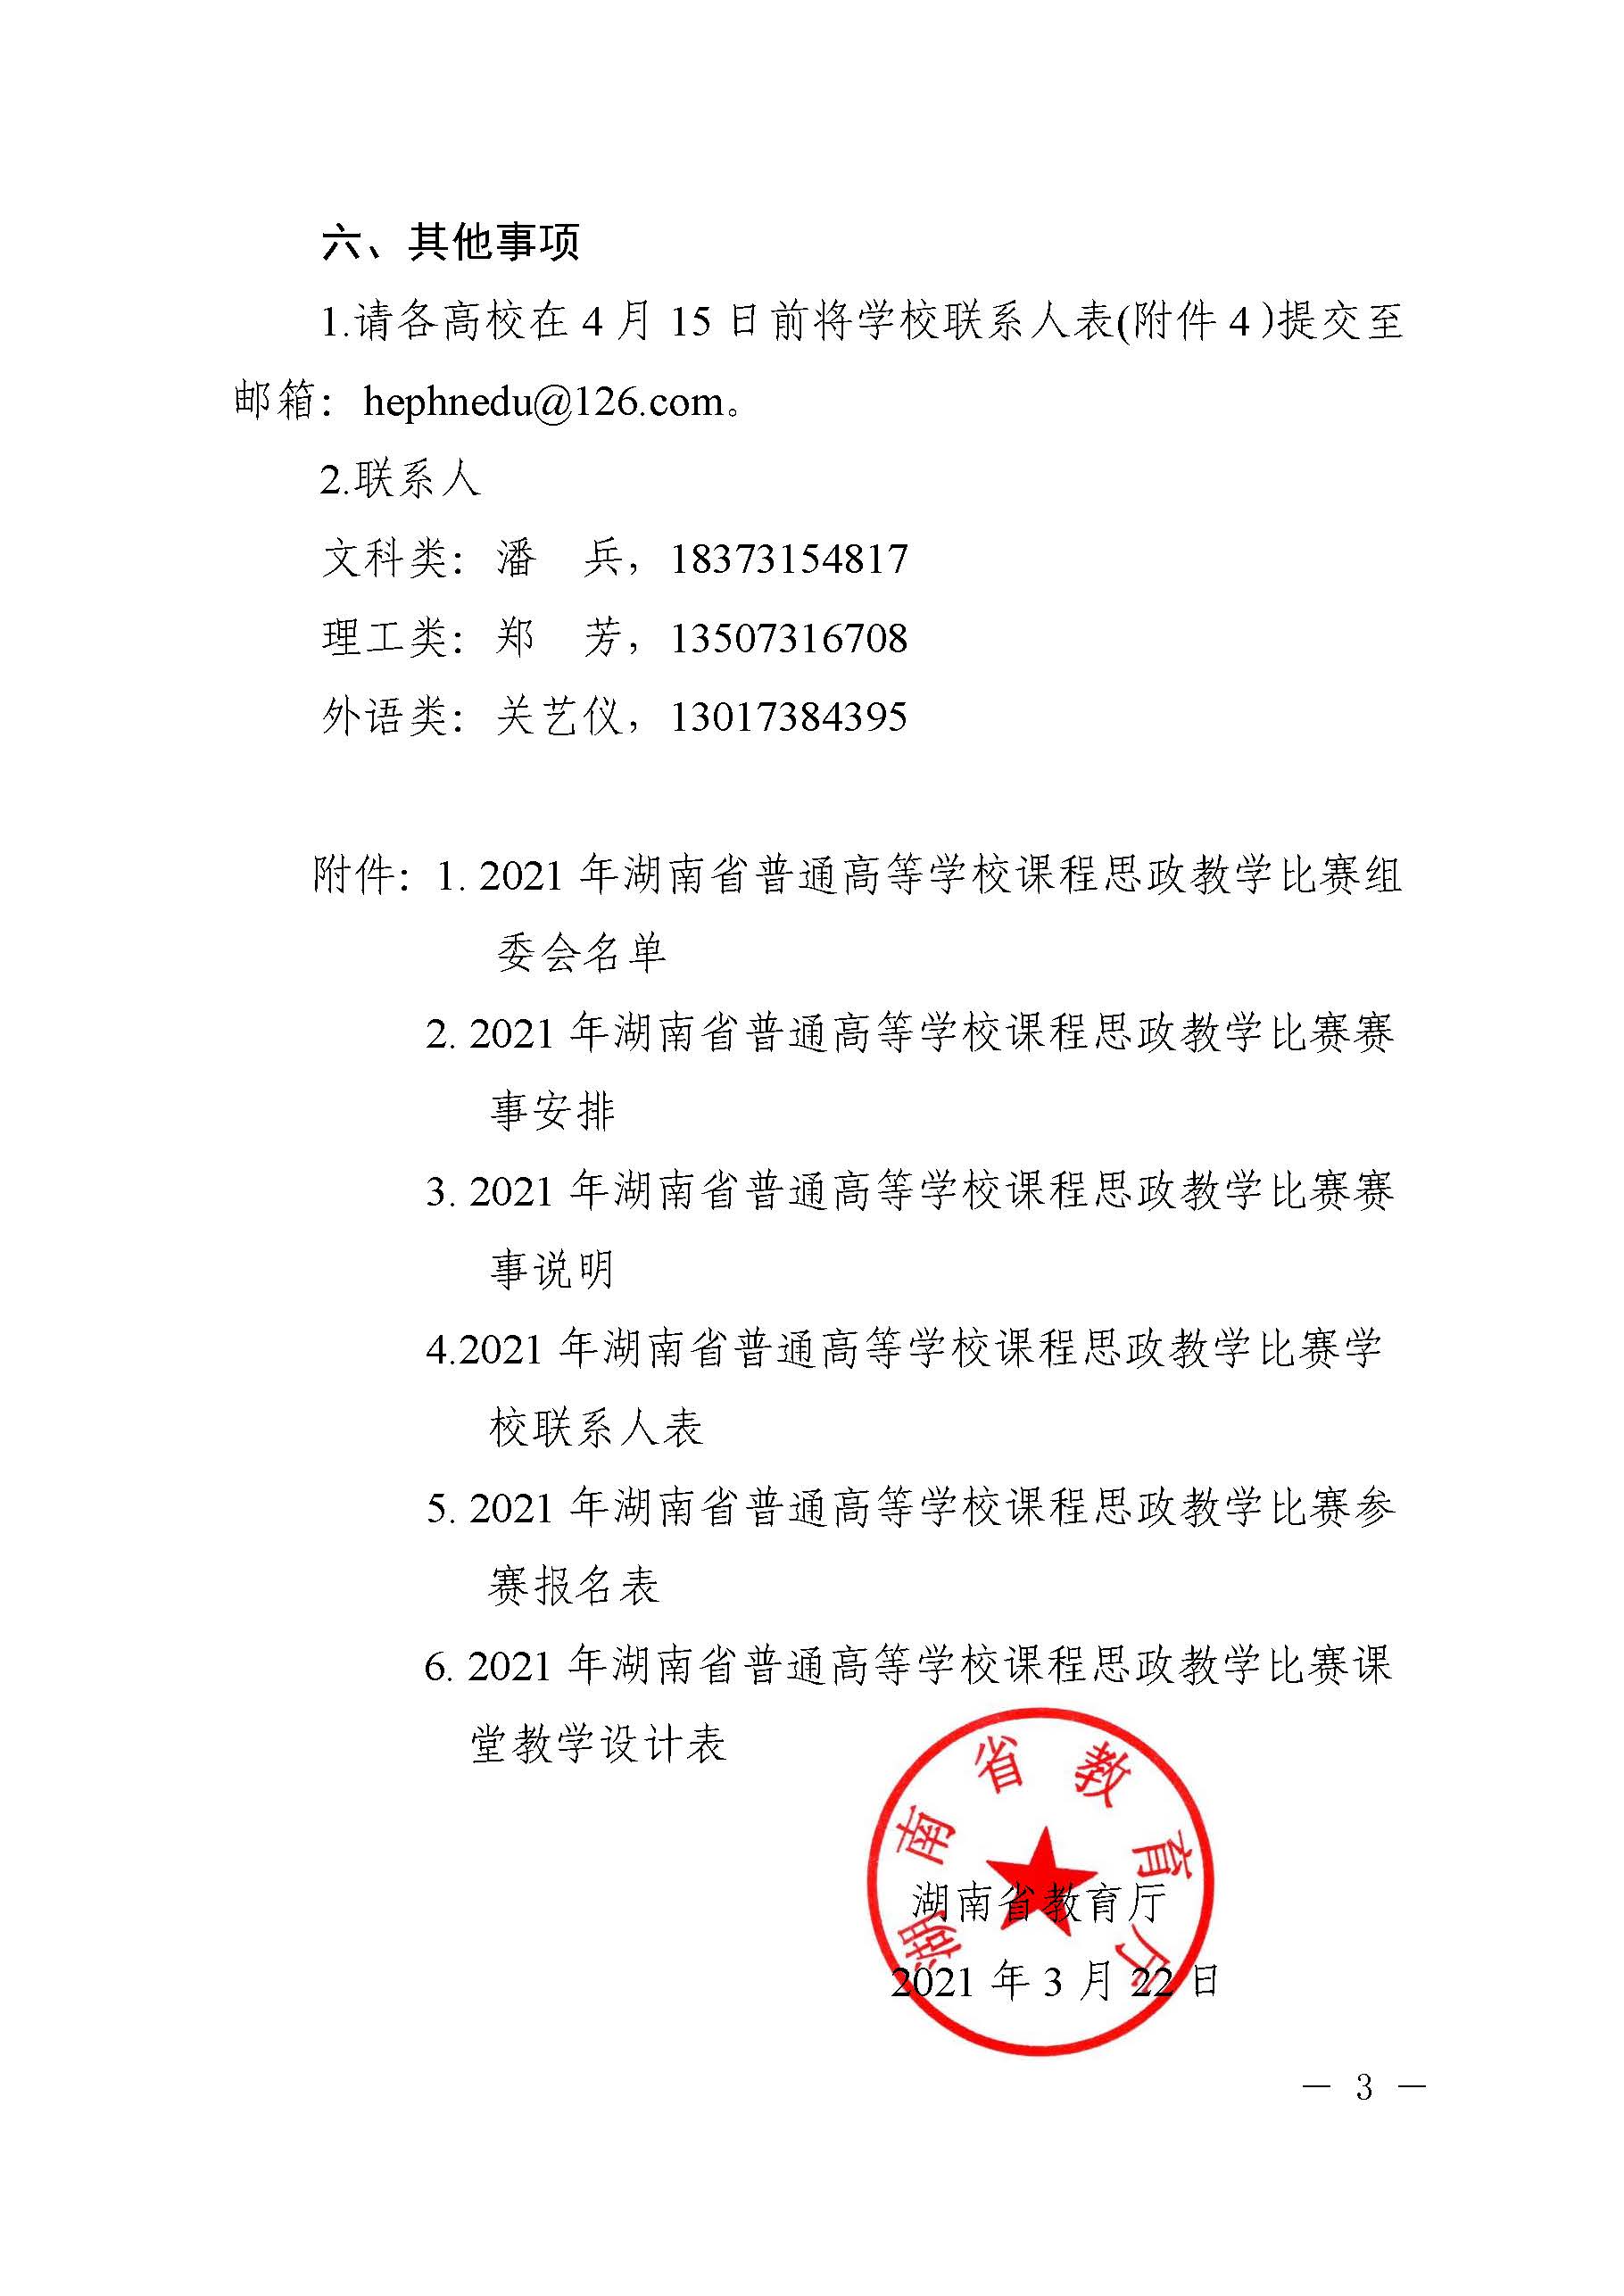 关于举办2021年湖南省普通高等学校课程思政教学比赛的通知_页面_03.jpg